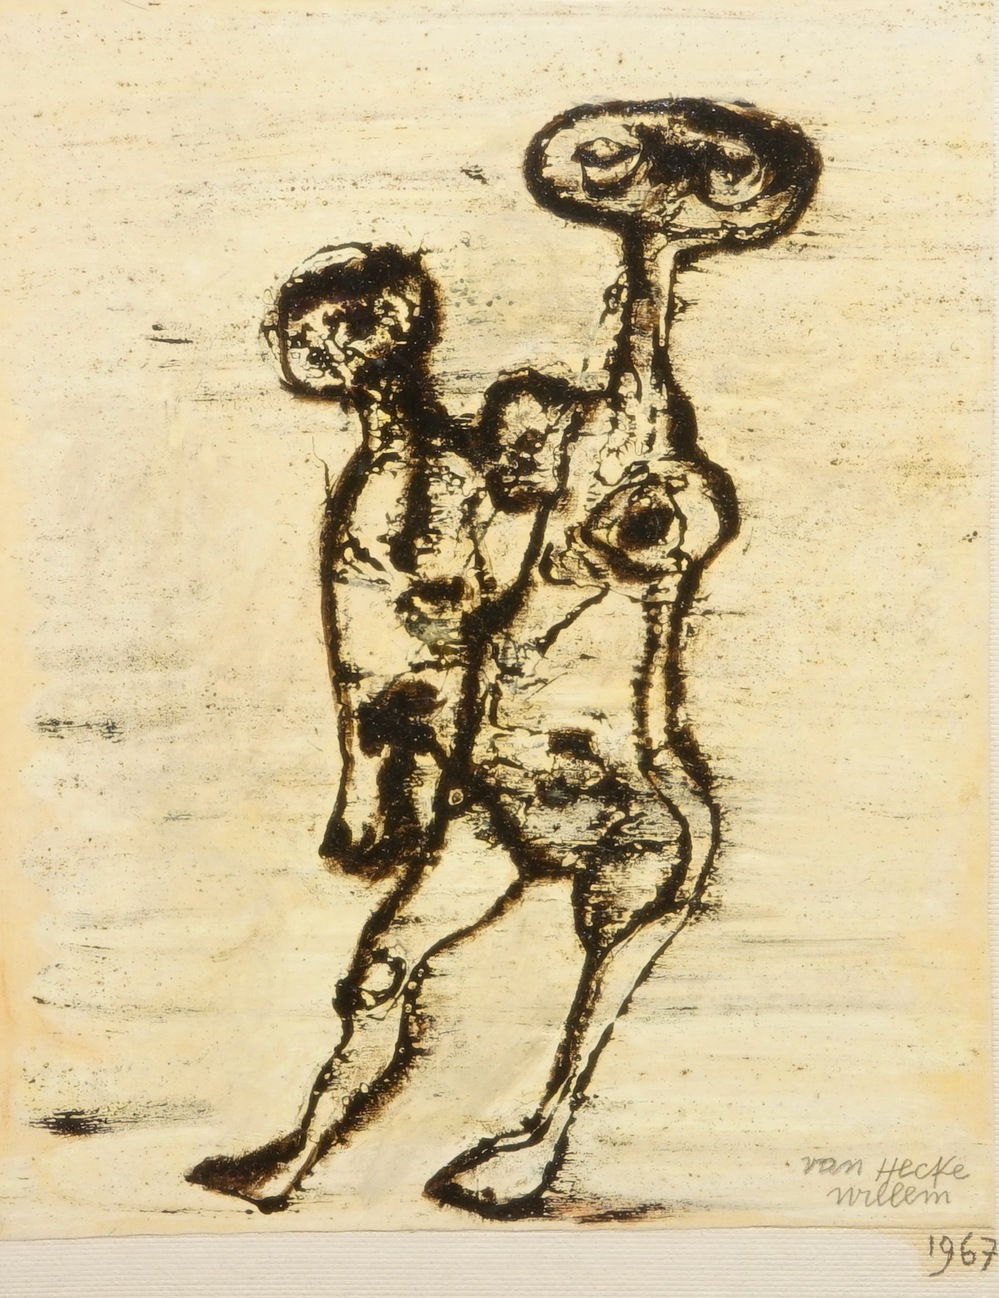 Van Hecke, Willem (Belgium, 1893-1976), Two figures, mixed media, dated 1967